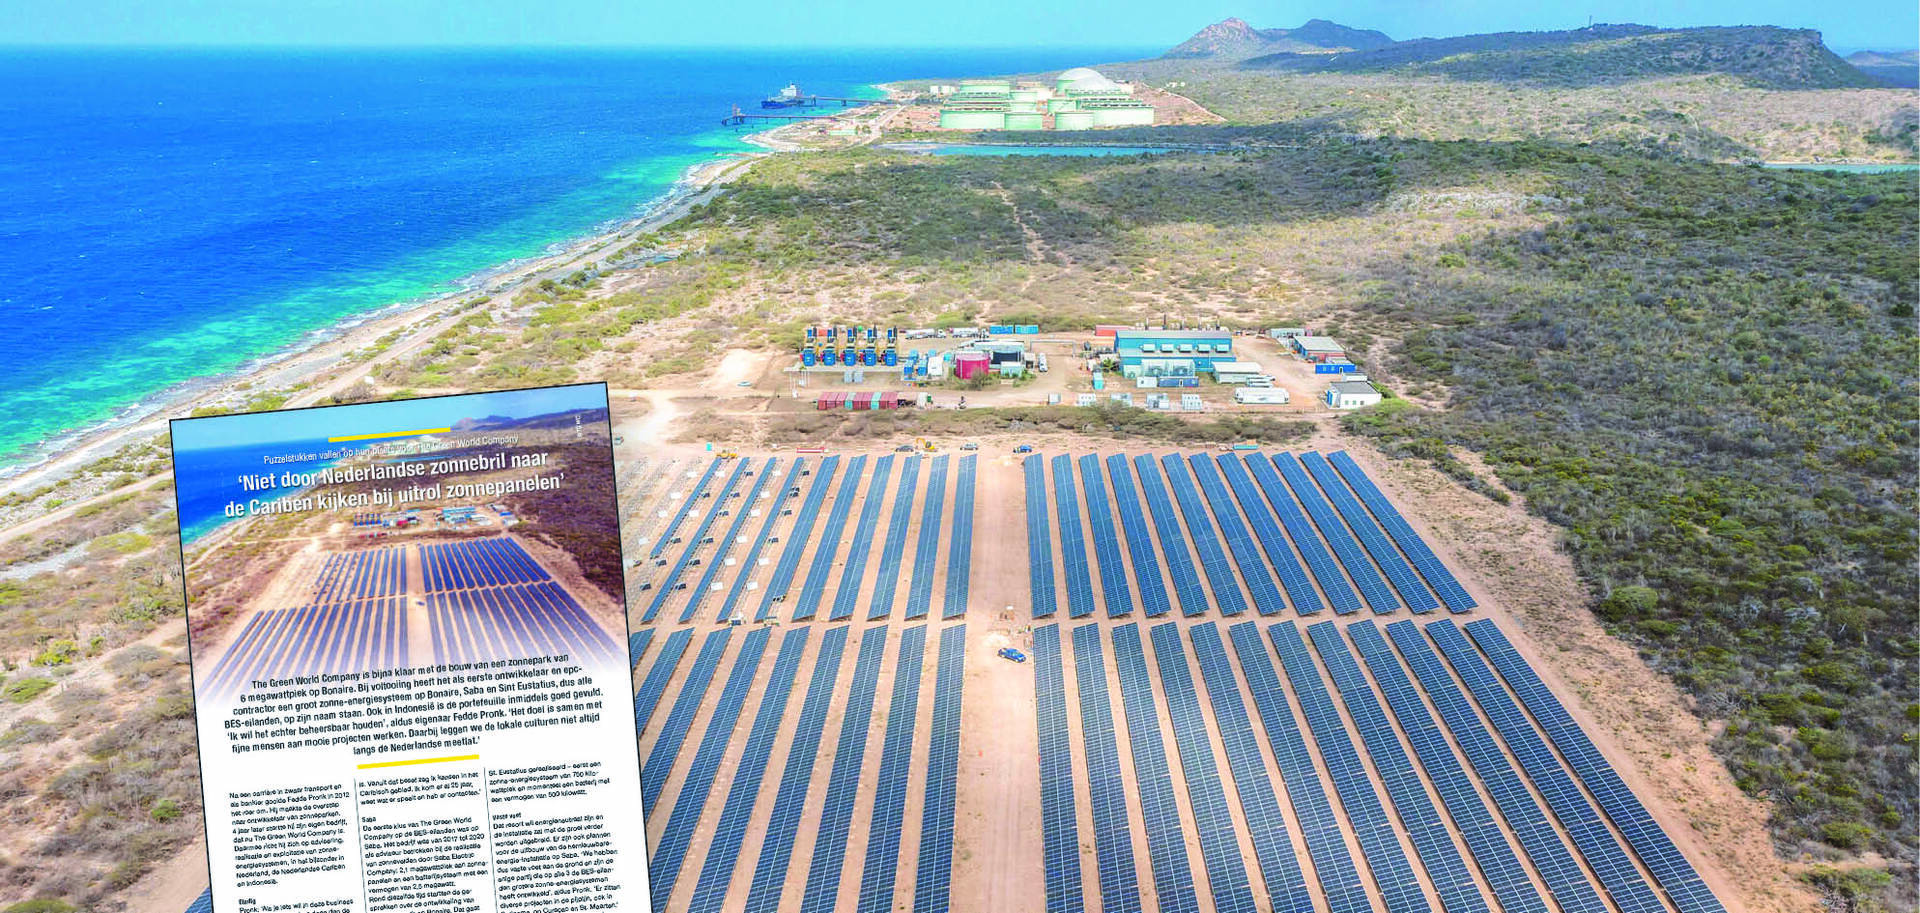 Majalah Solar Energy – “Jangan melihat Karibia melalui kacamata hitam Belanda saat meluncurkan panel surya”